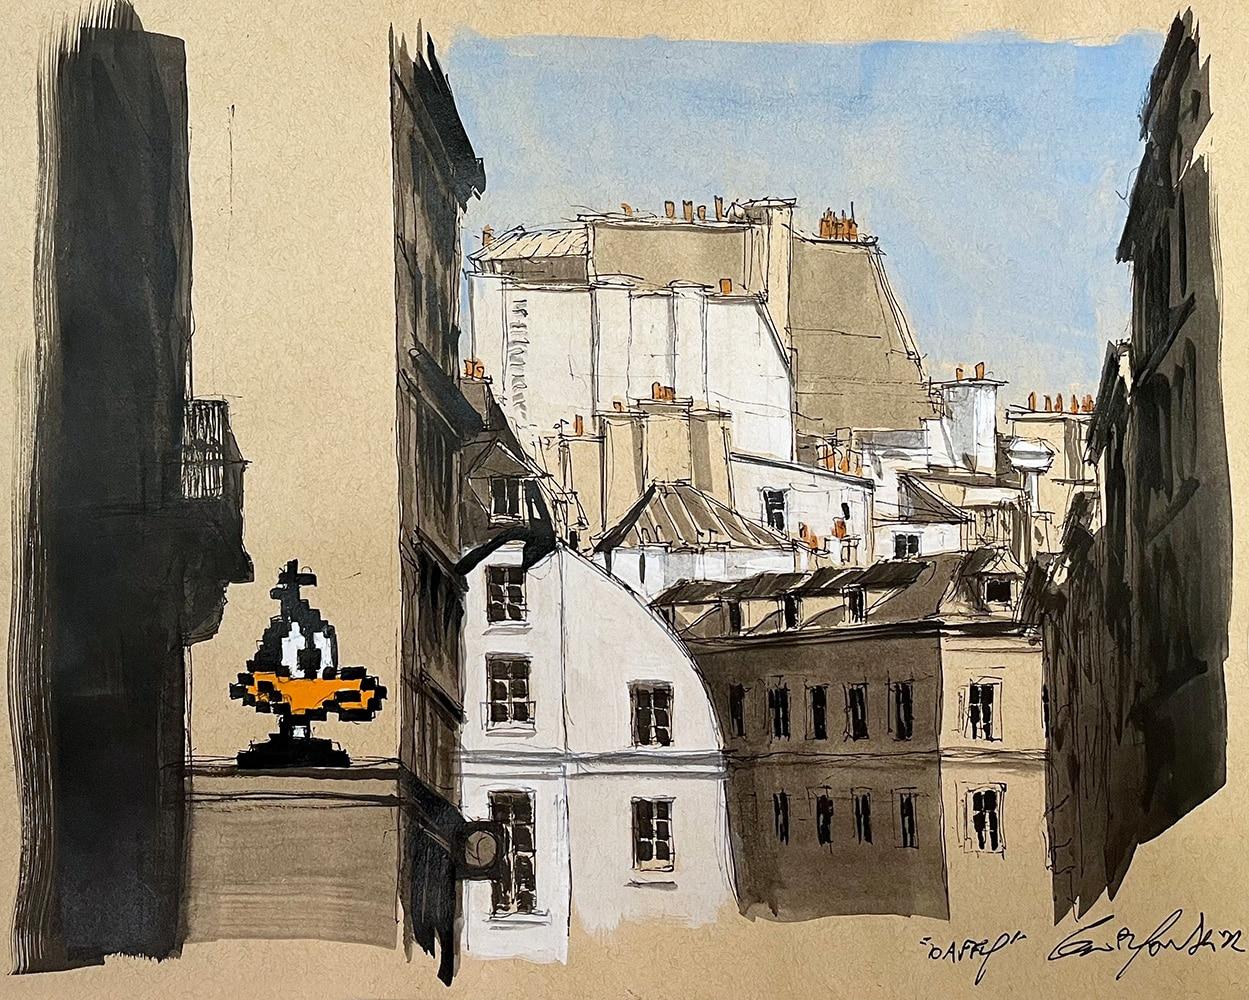 Daffy est une peinture unique de l'artiste contemporain Guillaume Chansarel. La peinture est réalisée à l'encre et à l'acrylique sur des pages de vieux livres montées sur toile. Les dimensions sont de 65 × 92 cm (25.6 × 36.2 in).
L'œuvre est signée,